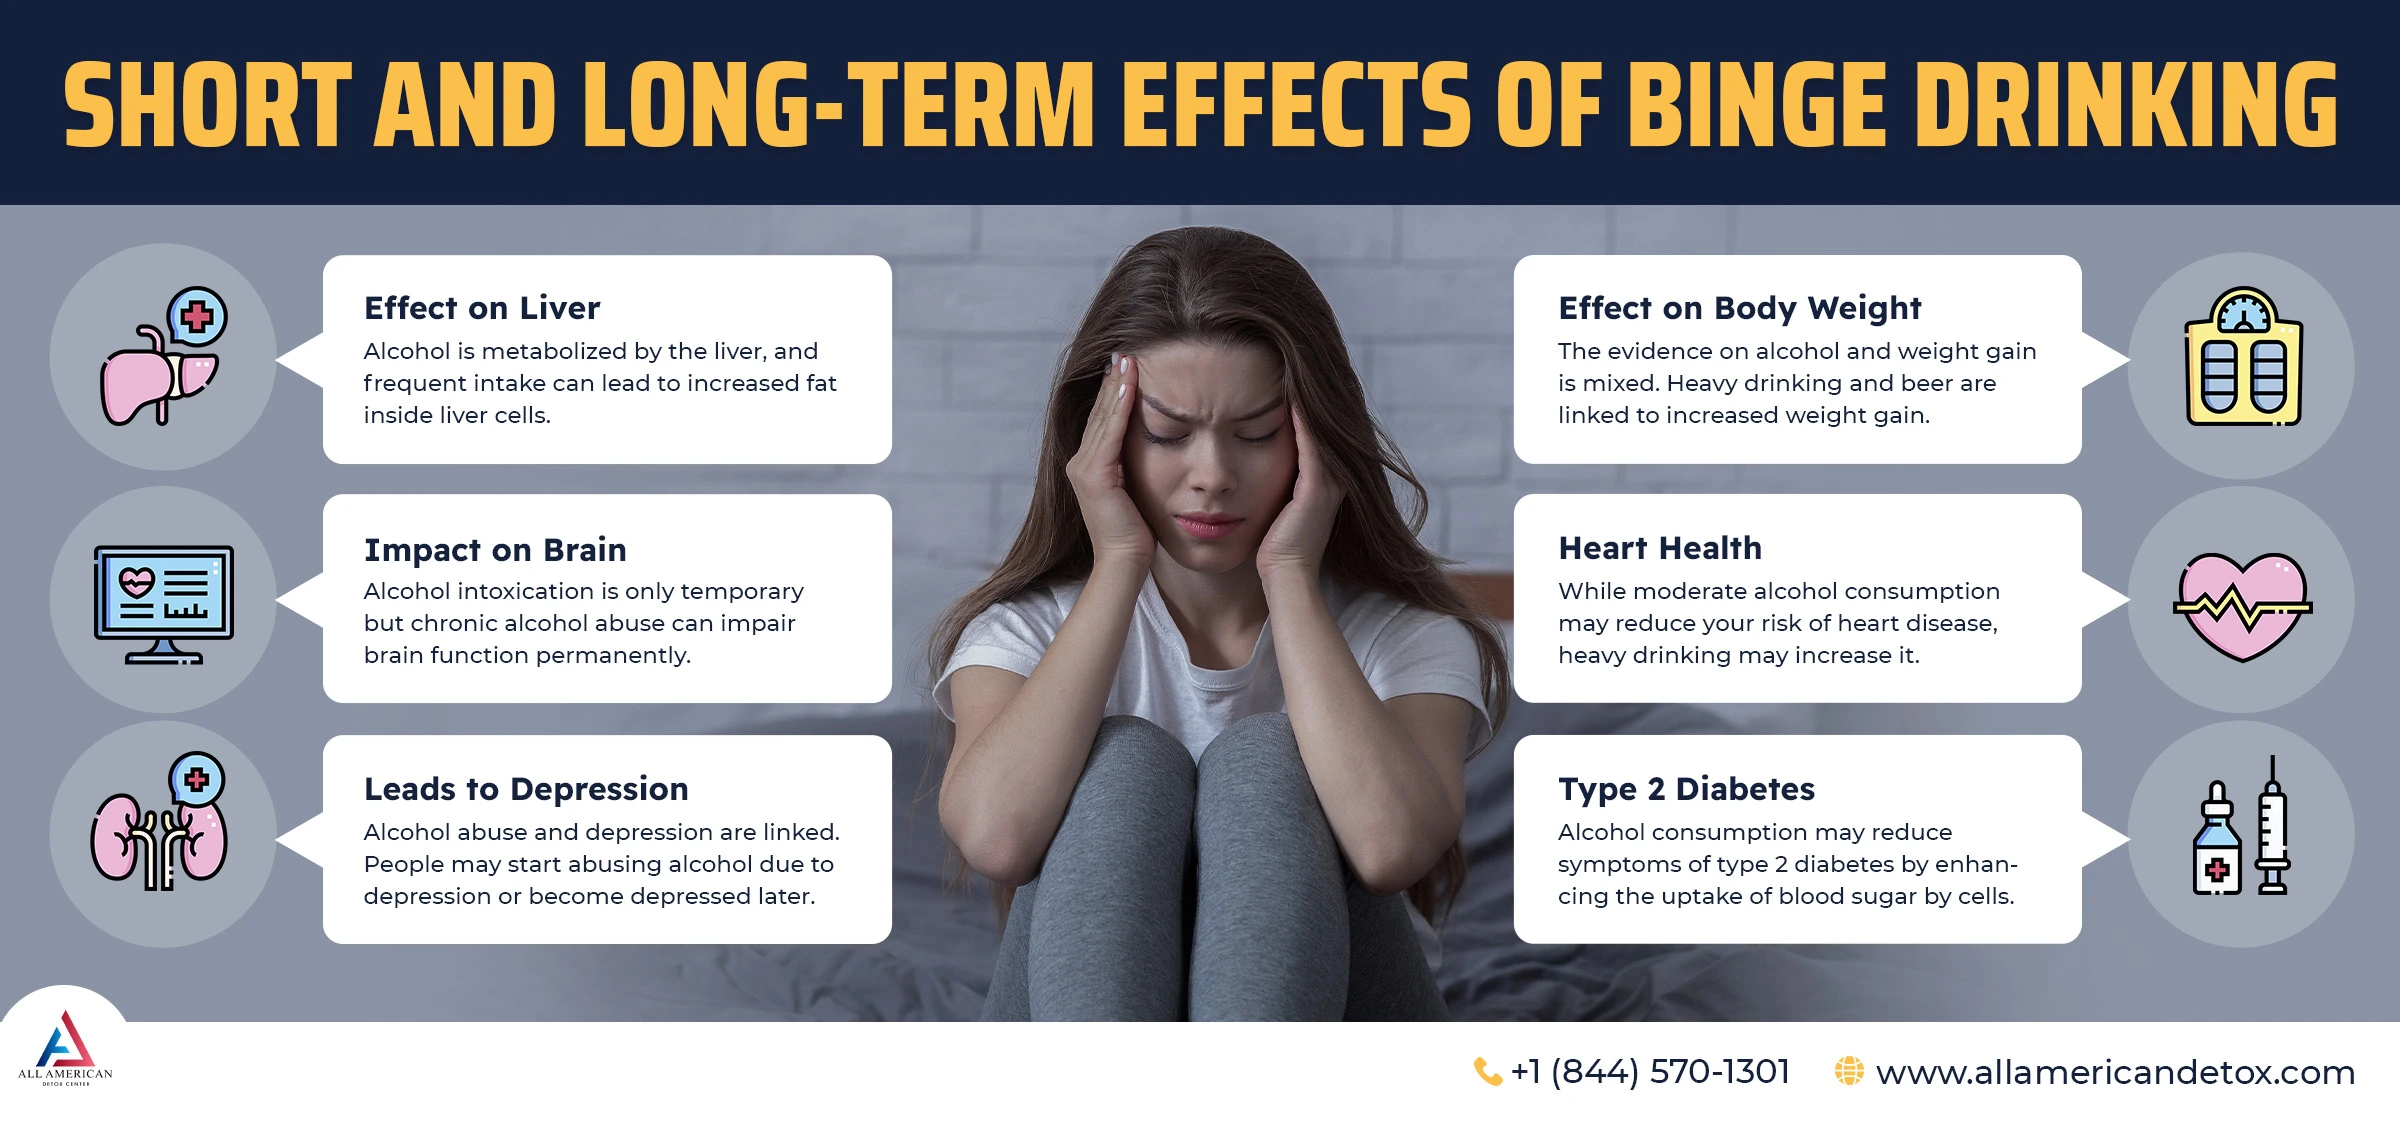 effects of binge drinking